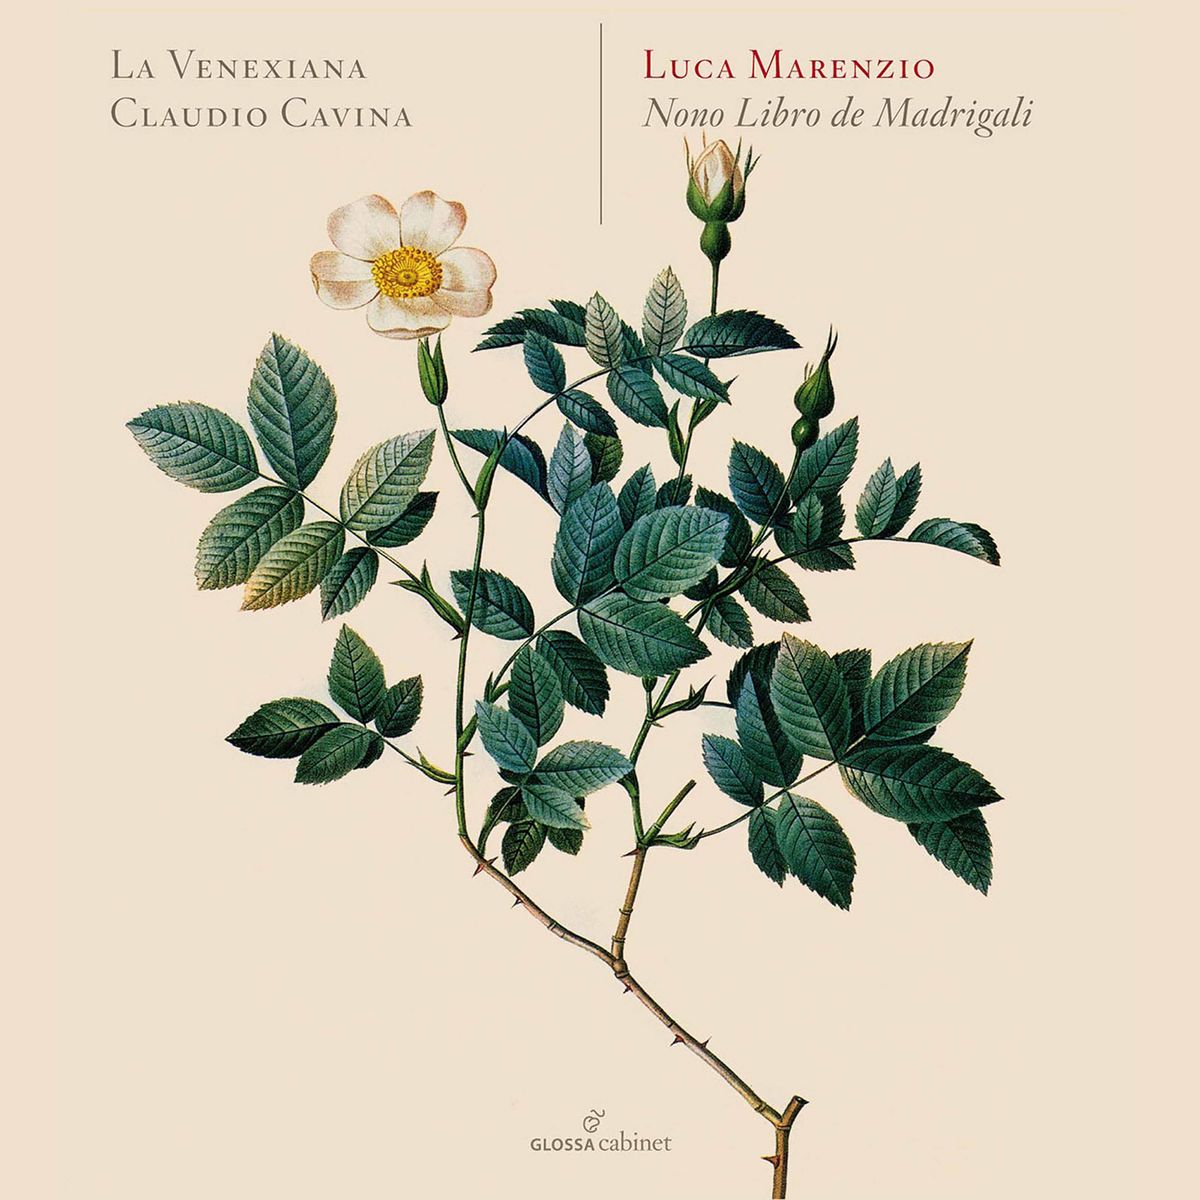 Marenzio - Madrigali á 5 voci, Libro 9 (Excerpts) - La Venexiana